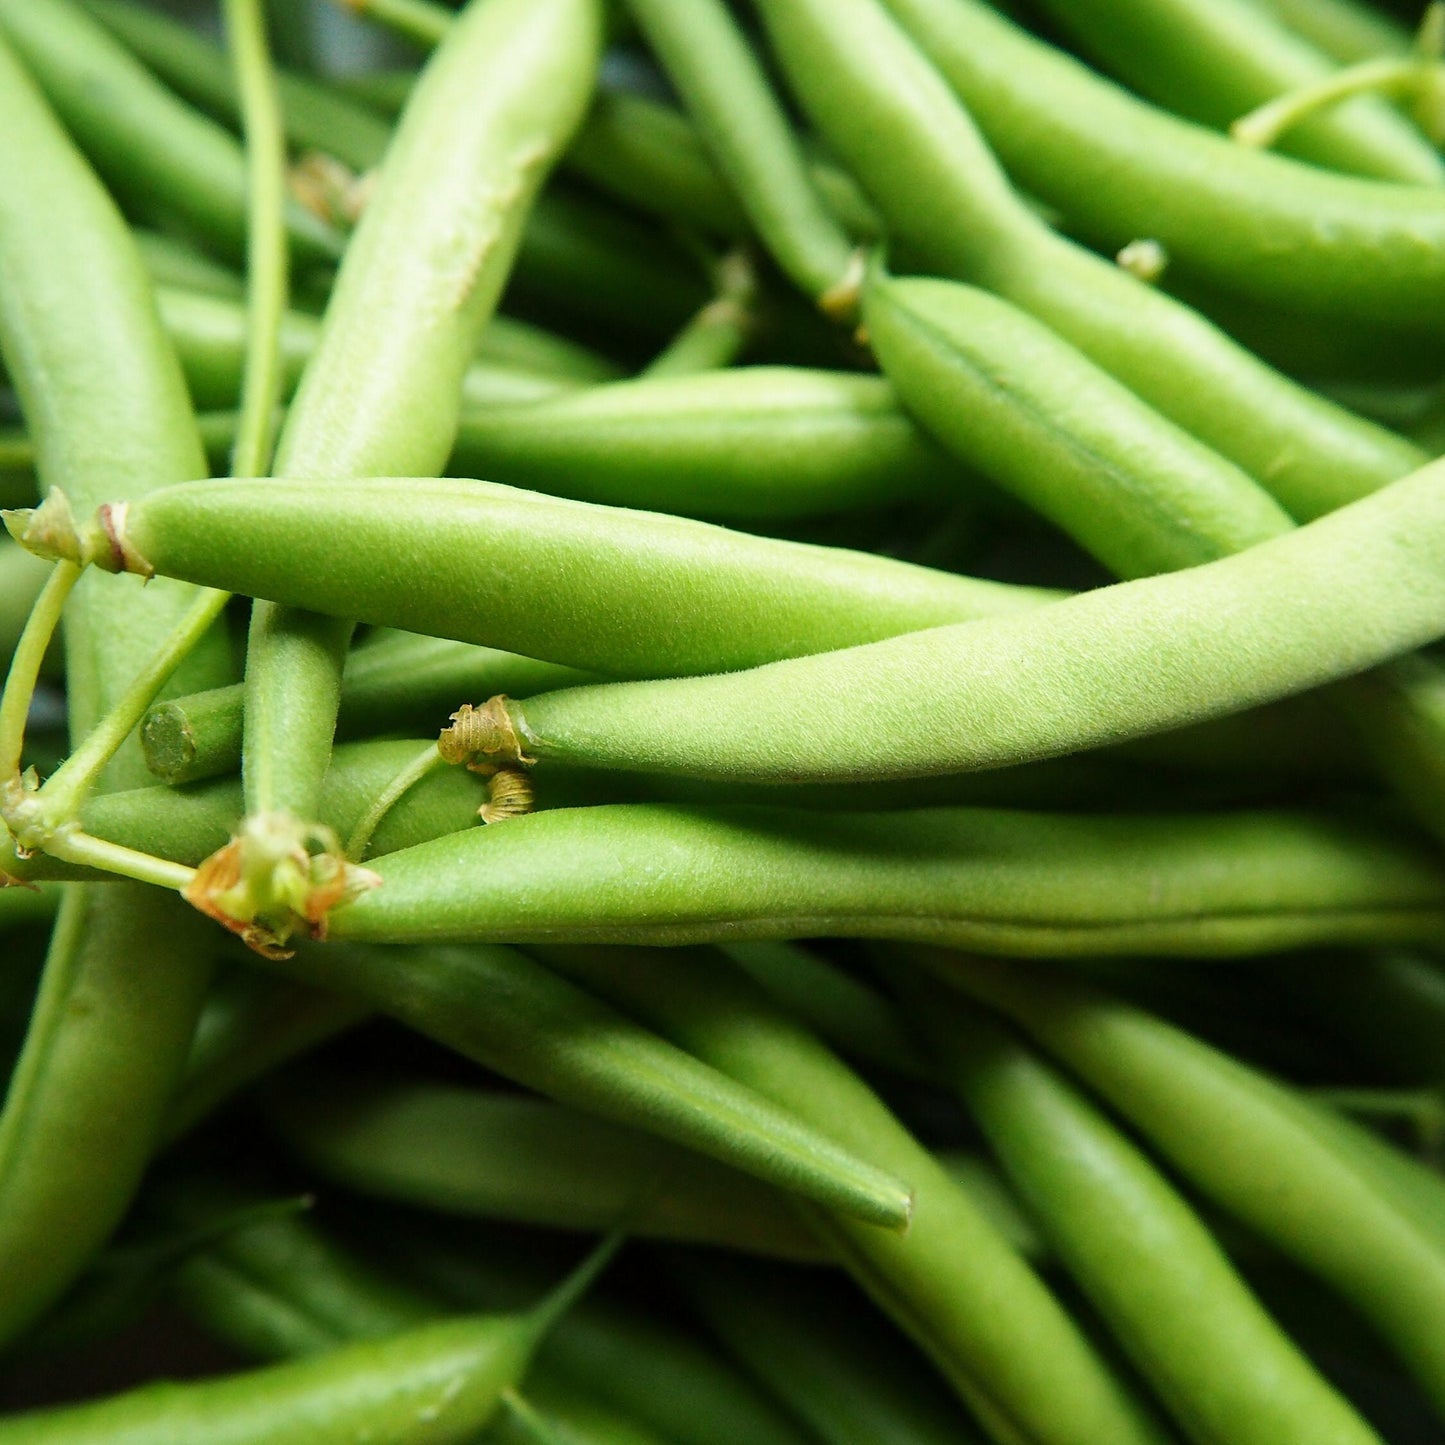 Contender Green Bean Seeds (Bush) Organic Non GMO Garden Vegetable Stringless Bush String Beans Seed